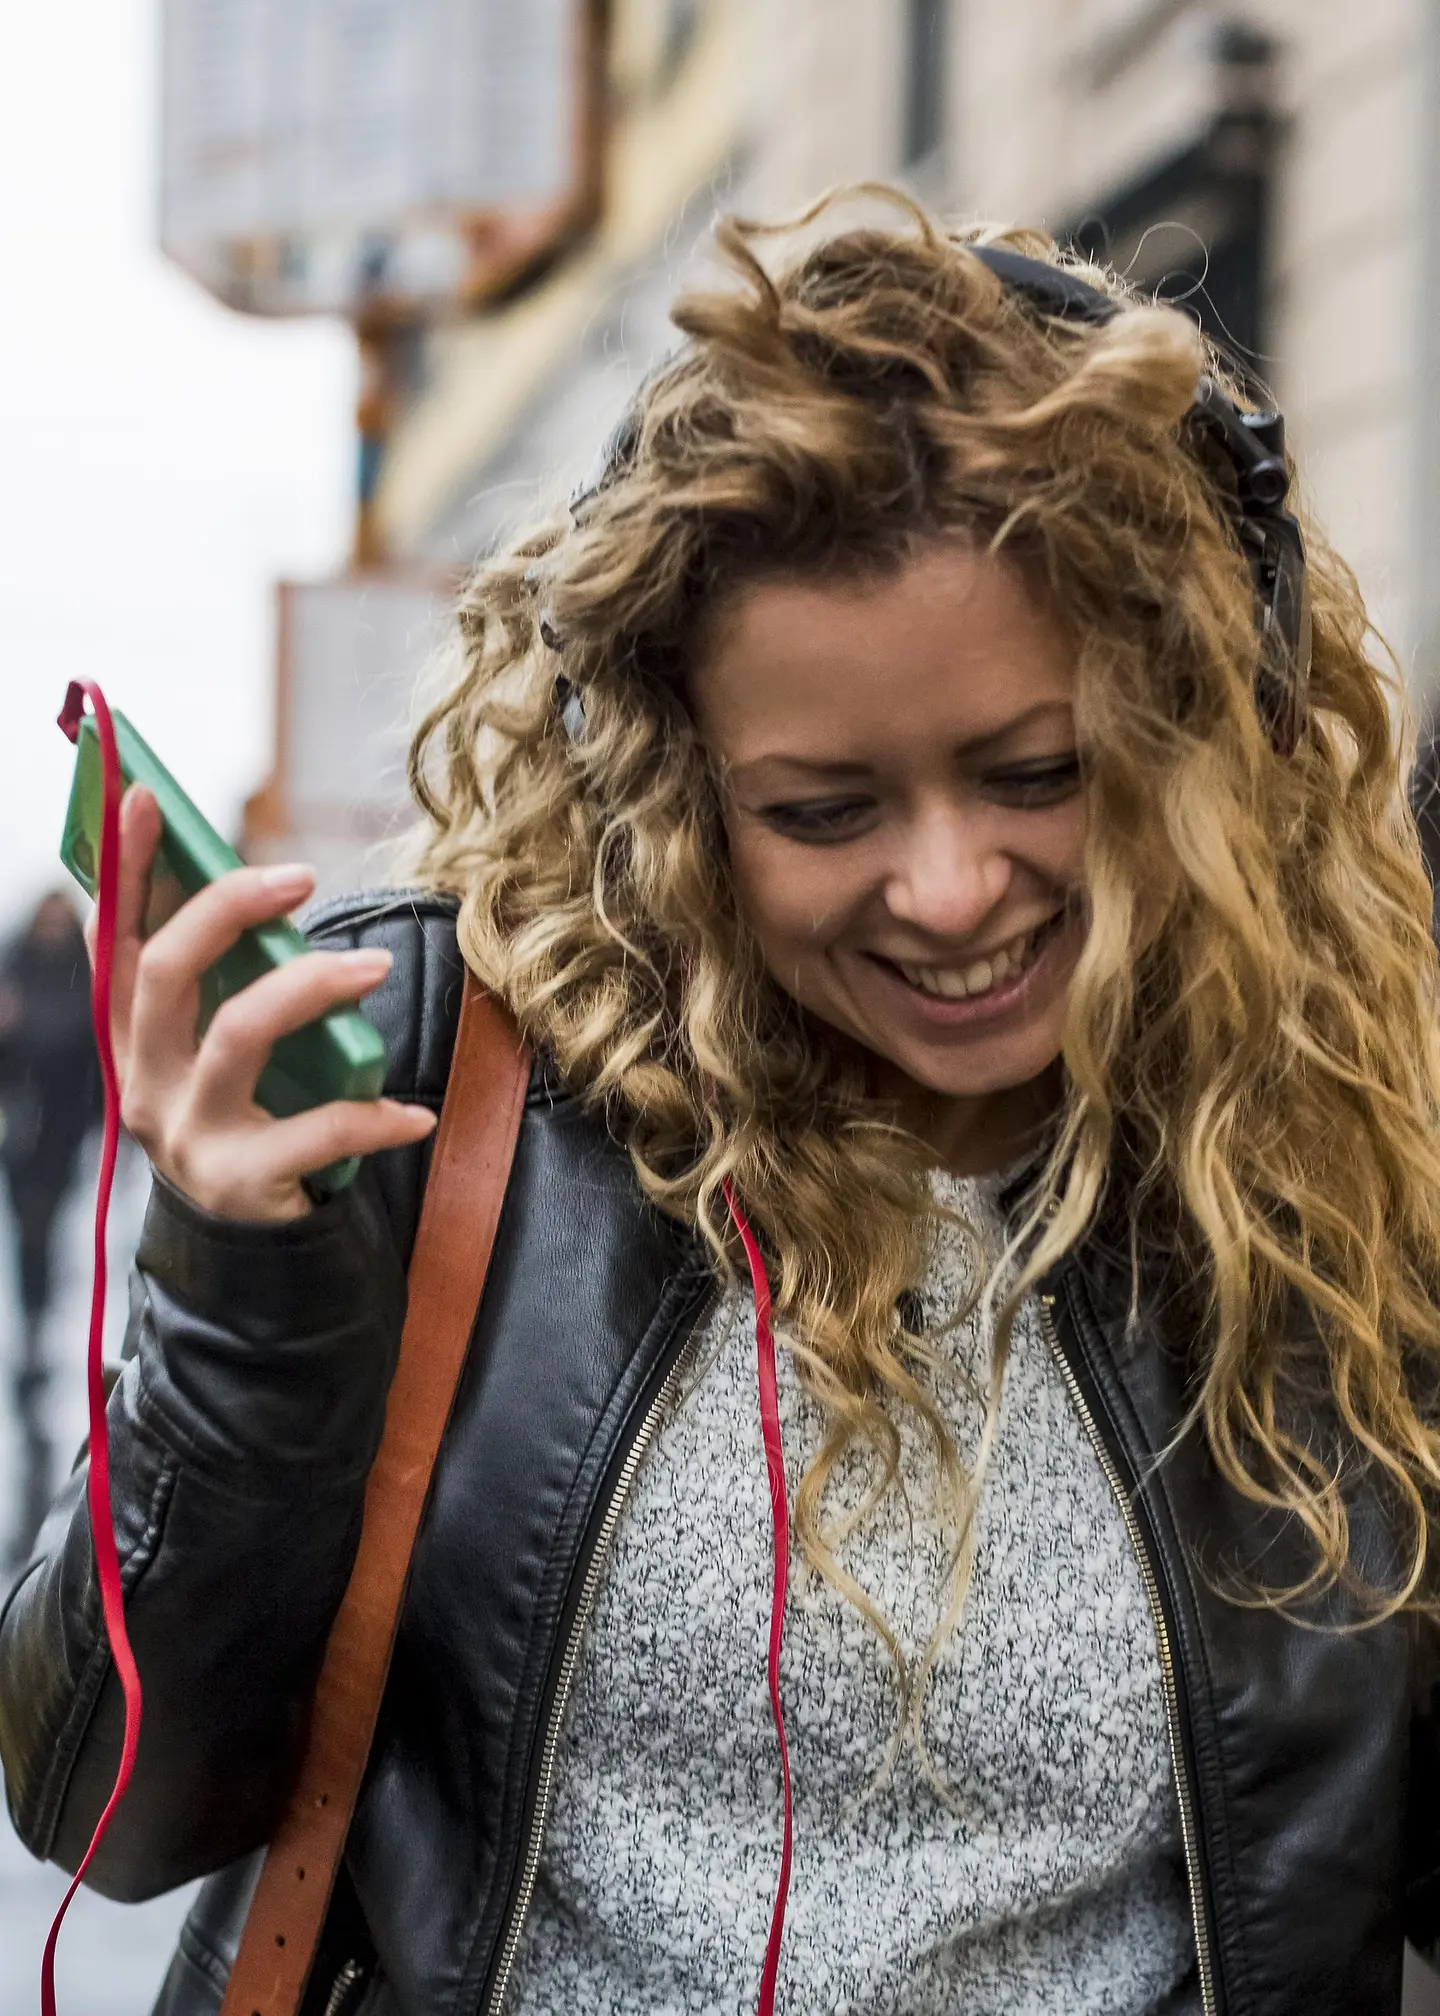  Une jeune femme marche dans la rue en riant et en écoutant de la musique sur son téléphone portable.